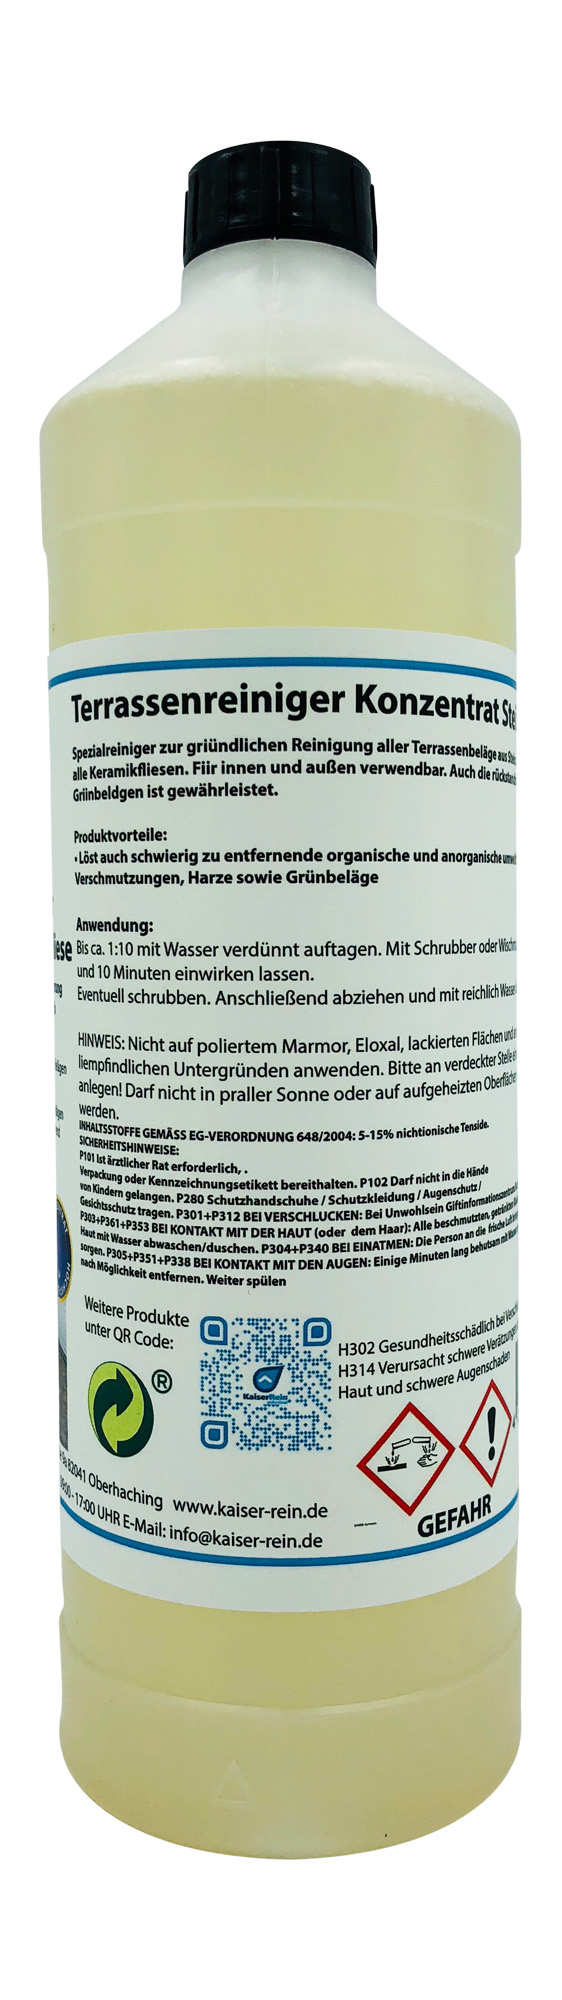 Terrassenreiniger  Konzentrat Stein  & Fliese Spezialreiniger zur gründlichen Reinigung aller Terass